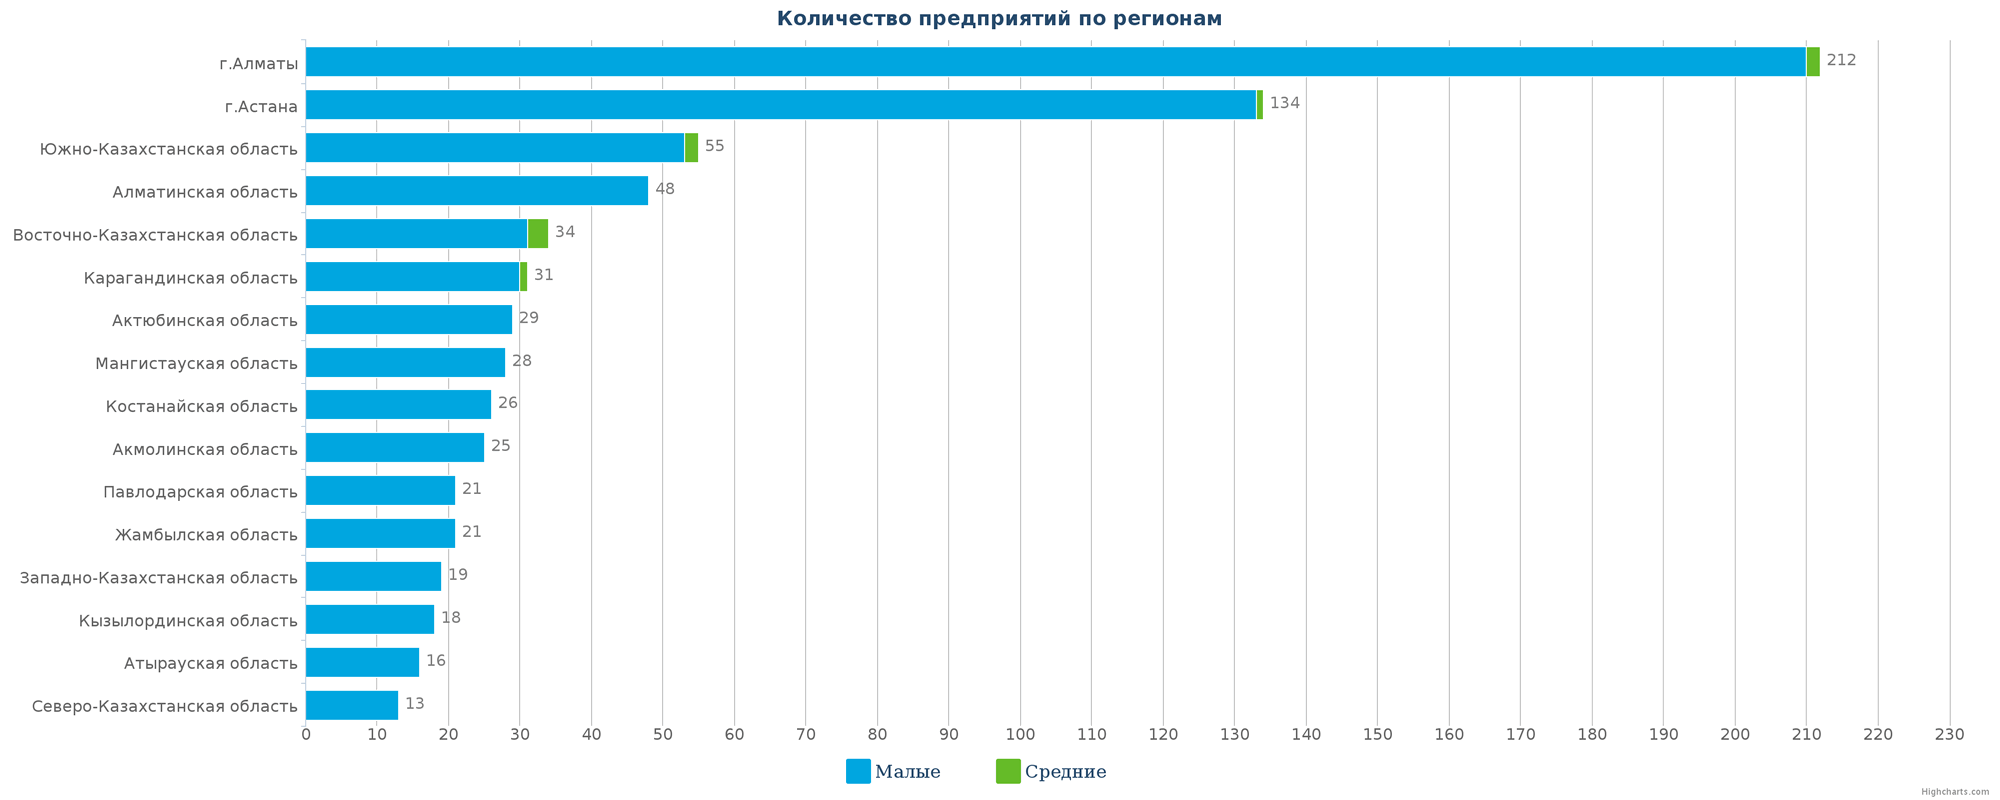 Количество новых юридических лиц в справочнике по регионам Казахстана